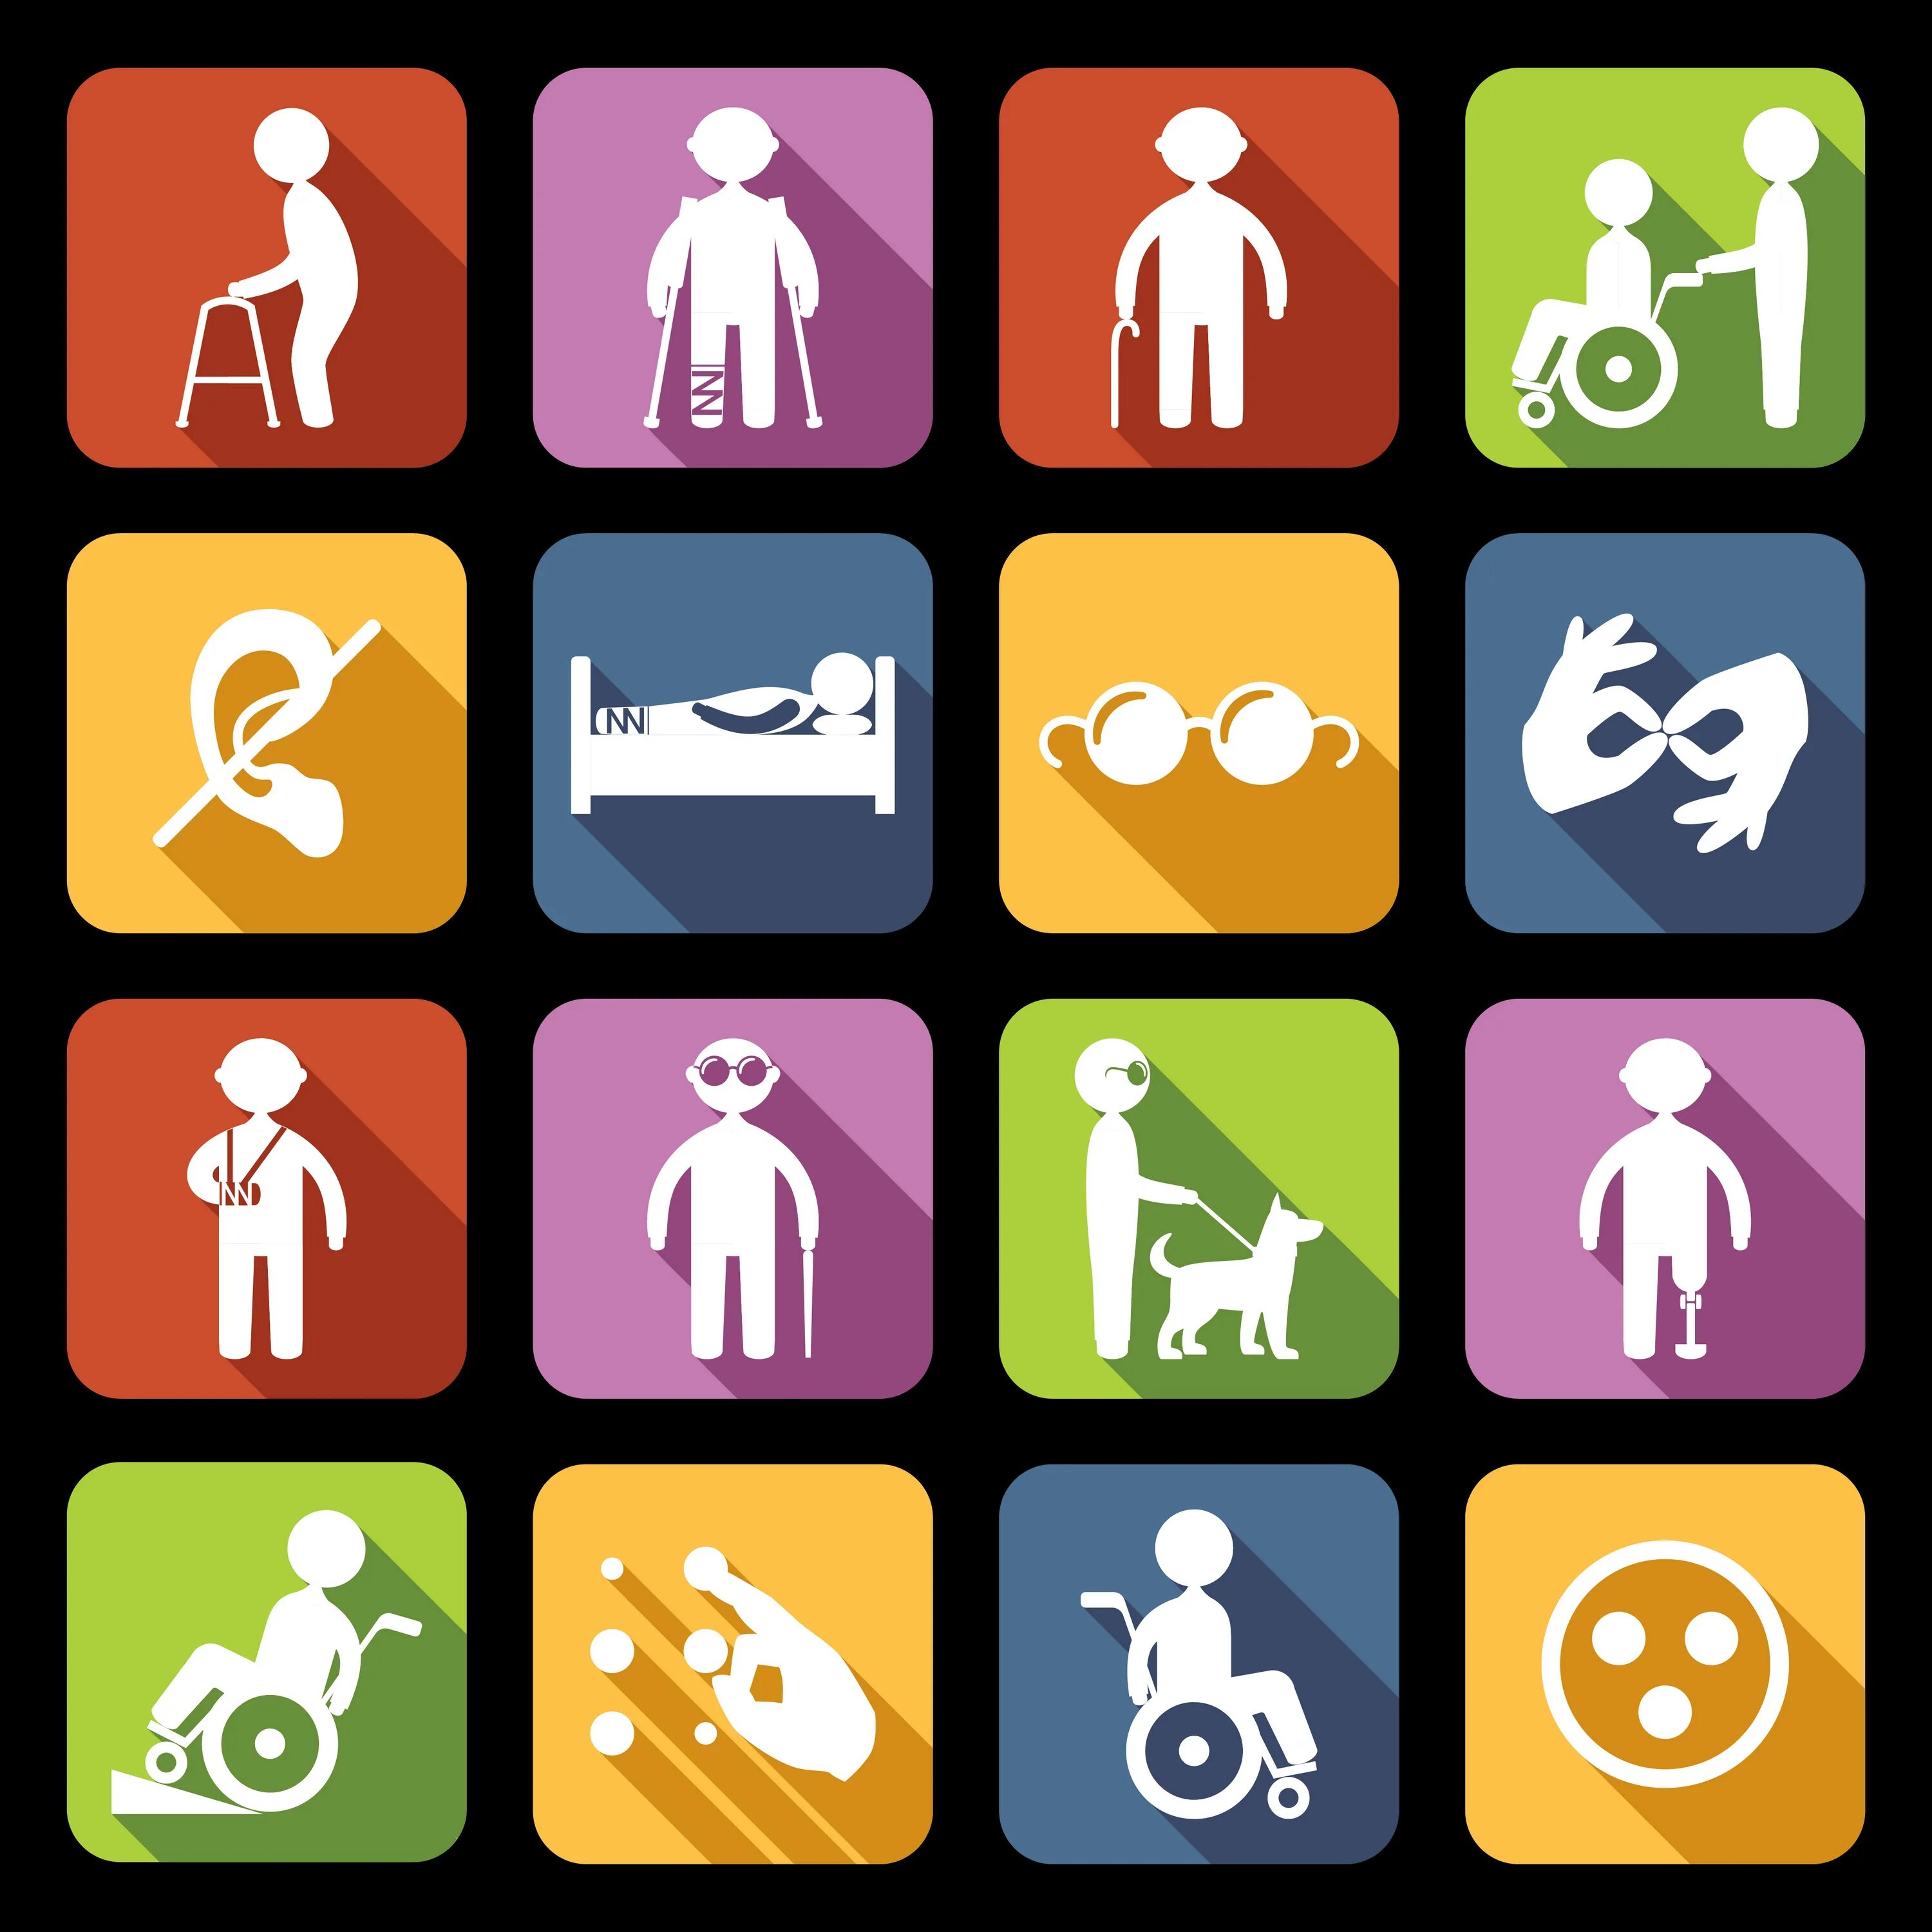 Инвалиды разных групп. Люди с ограниченными возможностями знак. Значок людей с ограниченными возможностями. Пиктограммы для людей с ограниченными возможностями. Знак людей с ограниченными способностями.